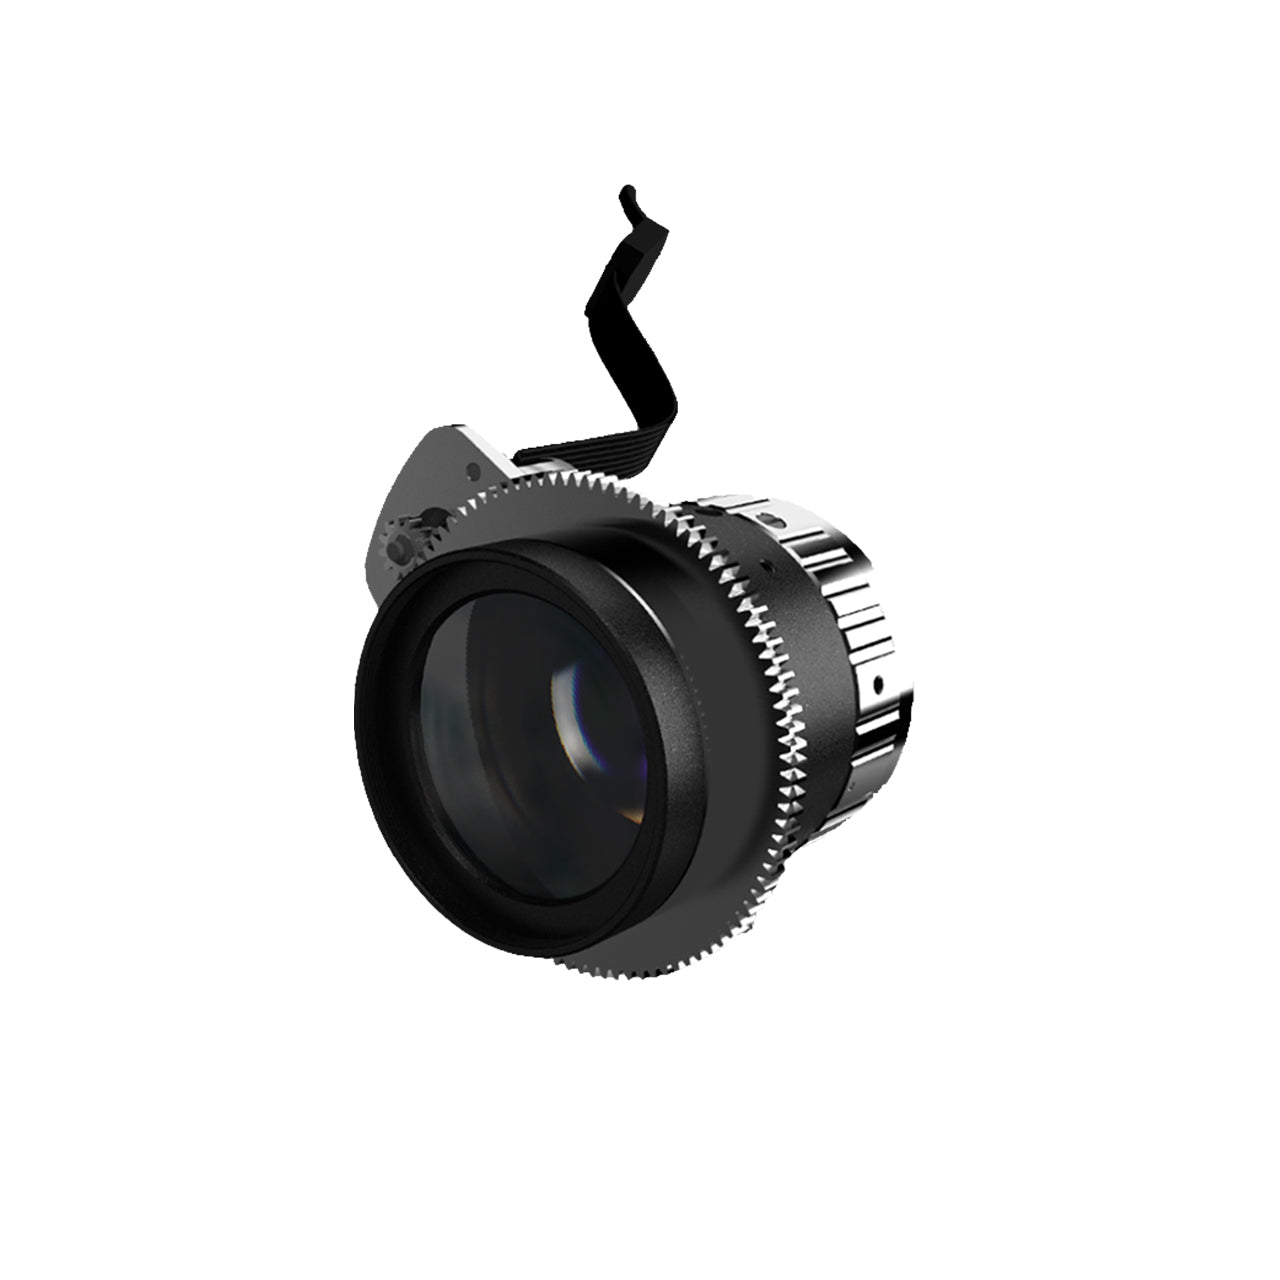 1.1'' C-Mount Motor Focus Lenses